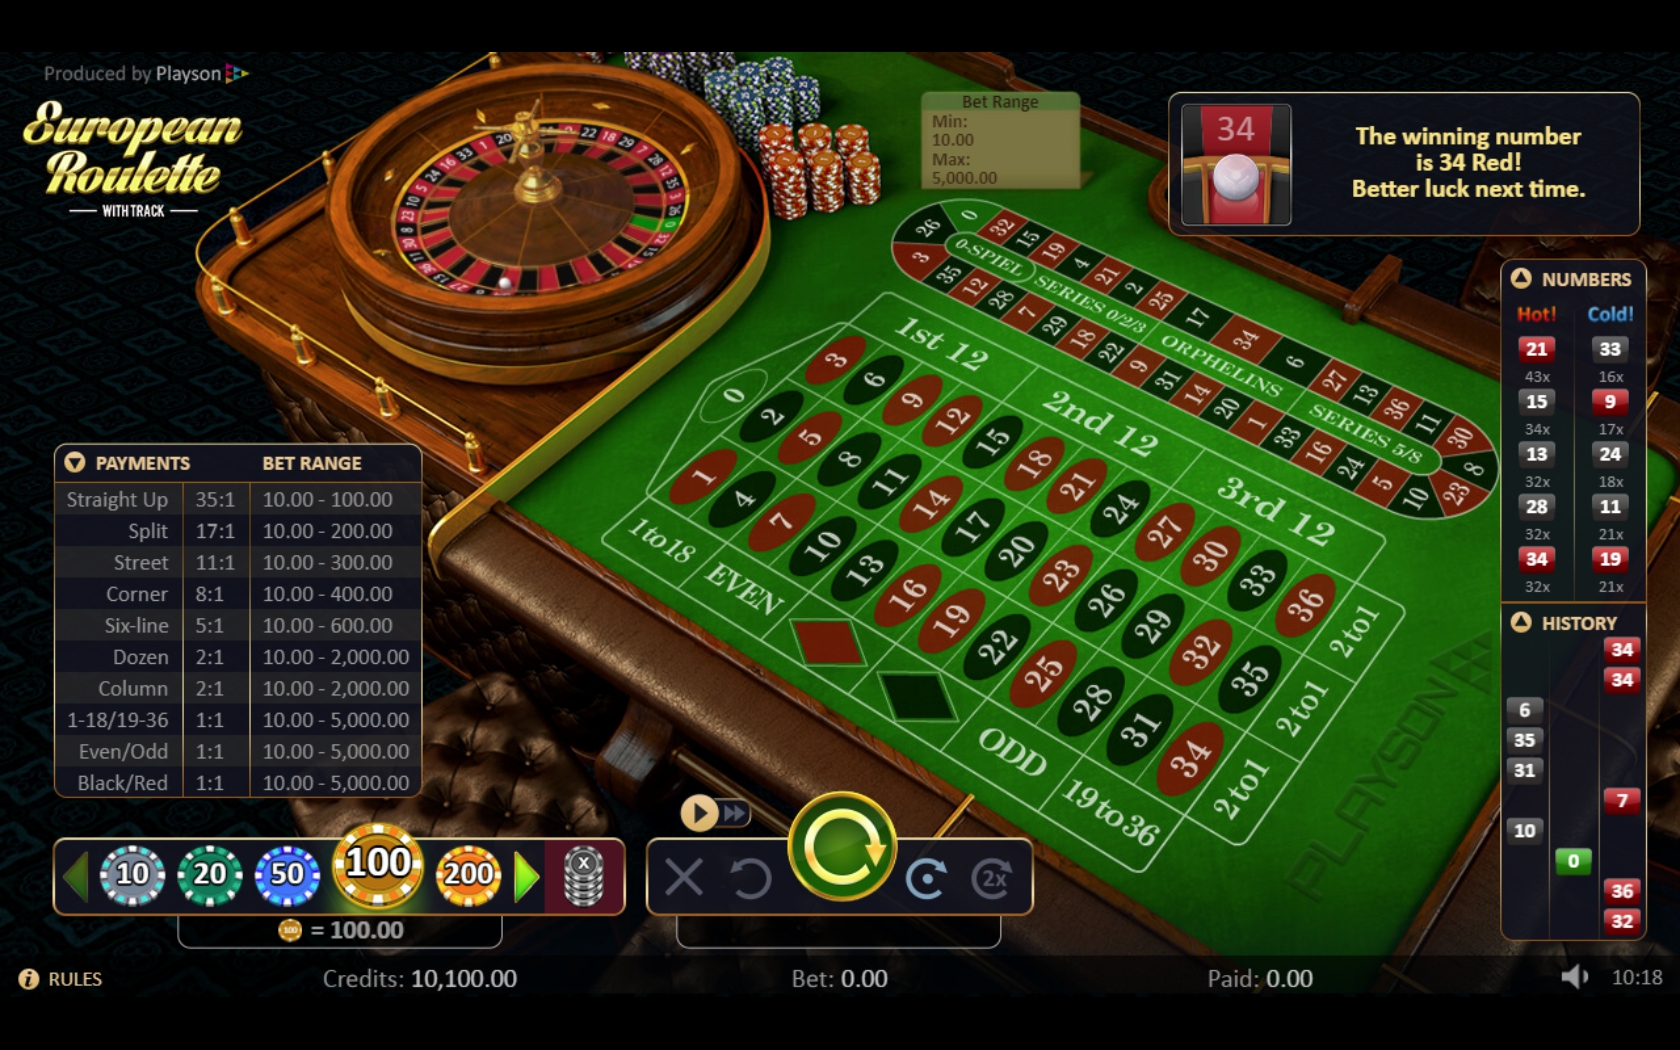 Rembrandt Casino Casino Games